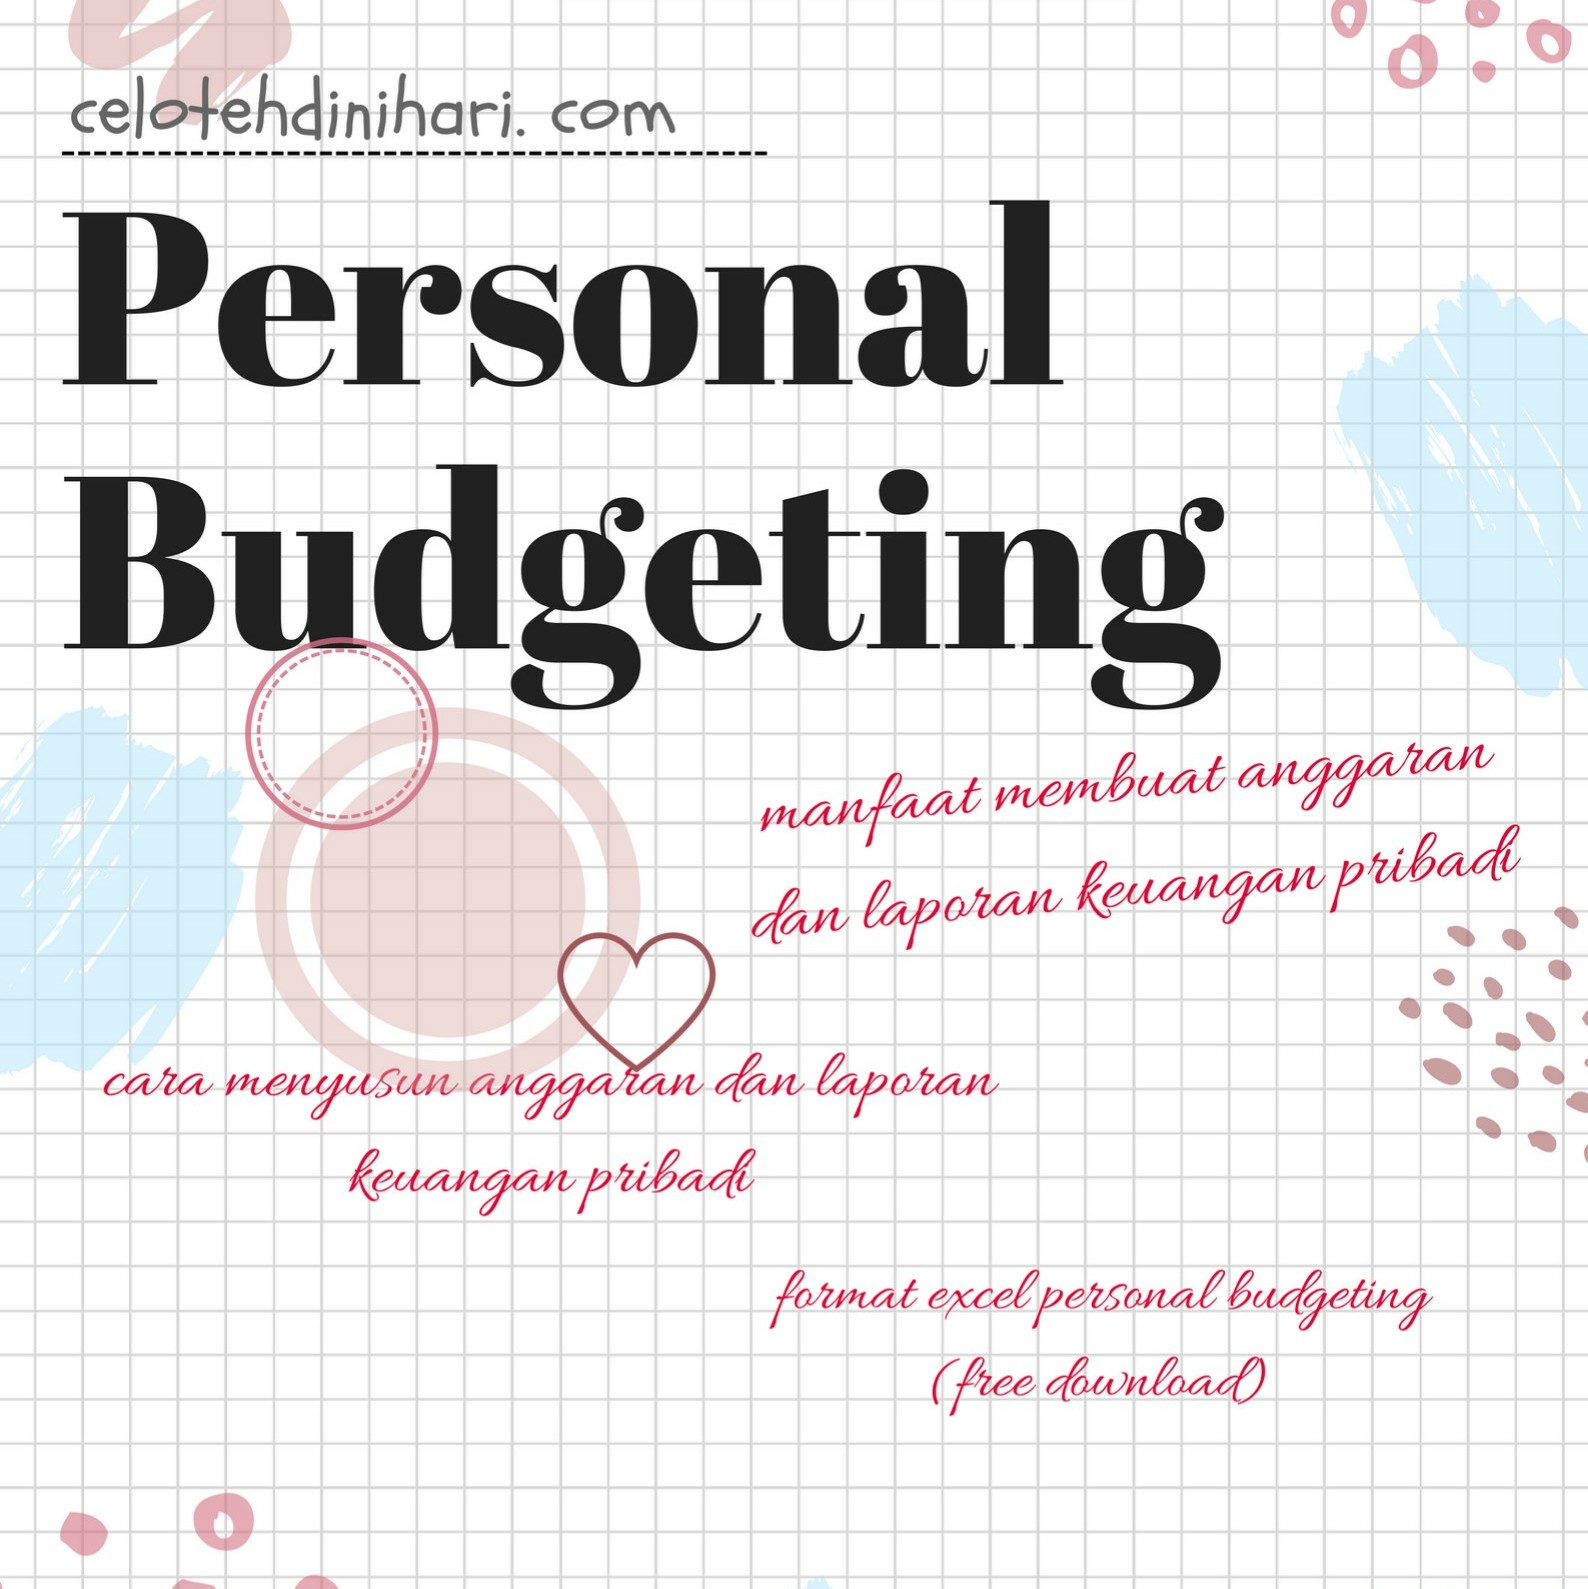 Membuat Anggaran Dan Laporan Keuangan Pribadi Free Download Form Excel Personal Budgeting